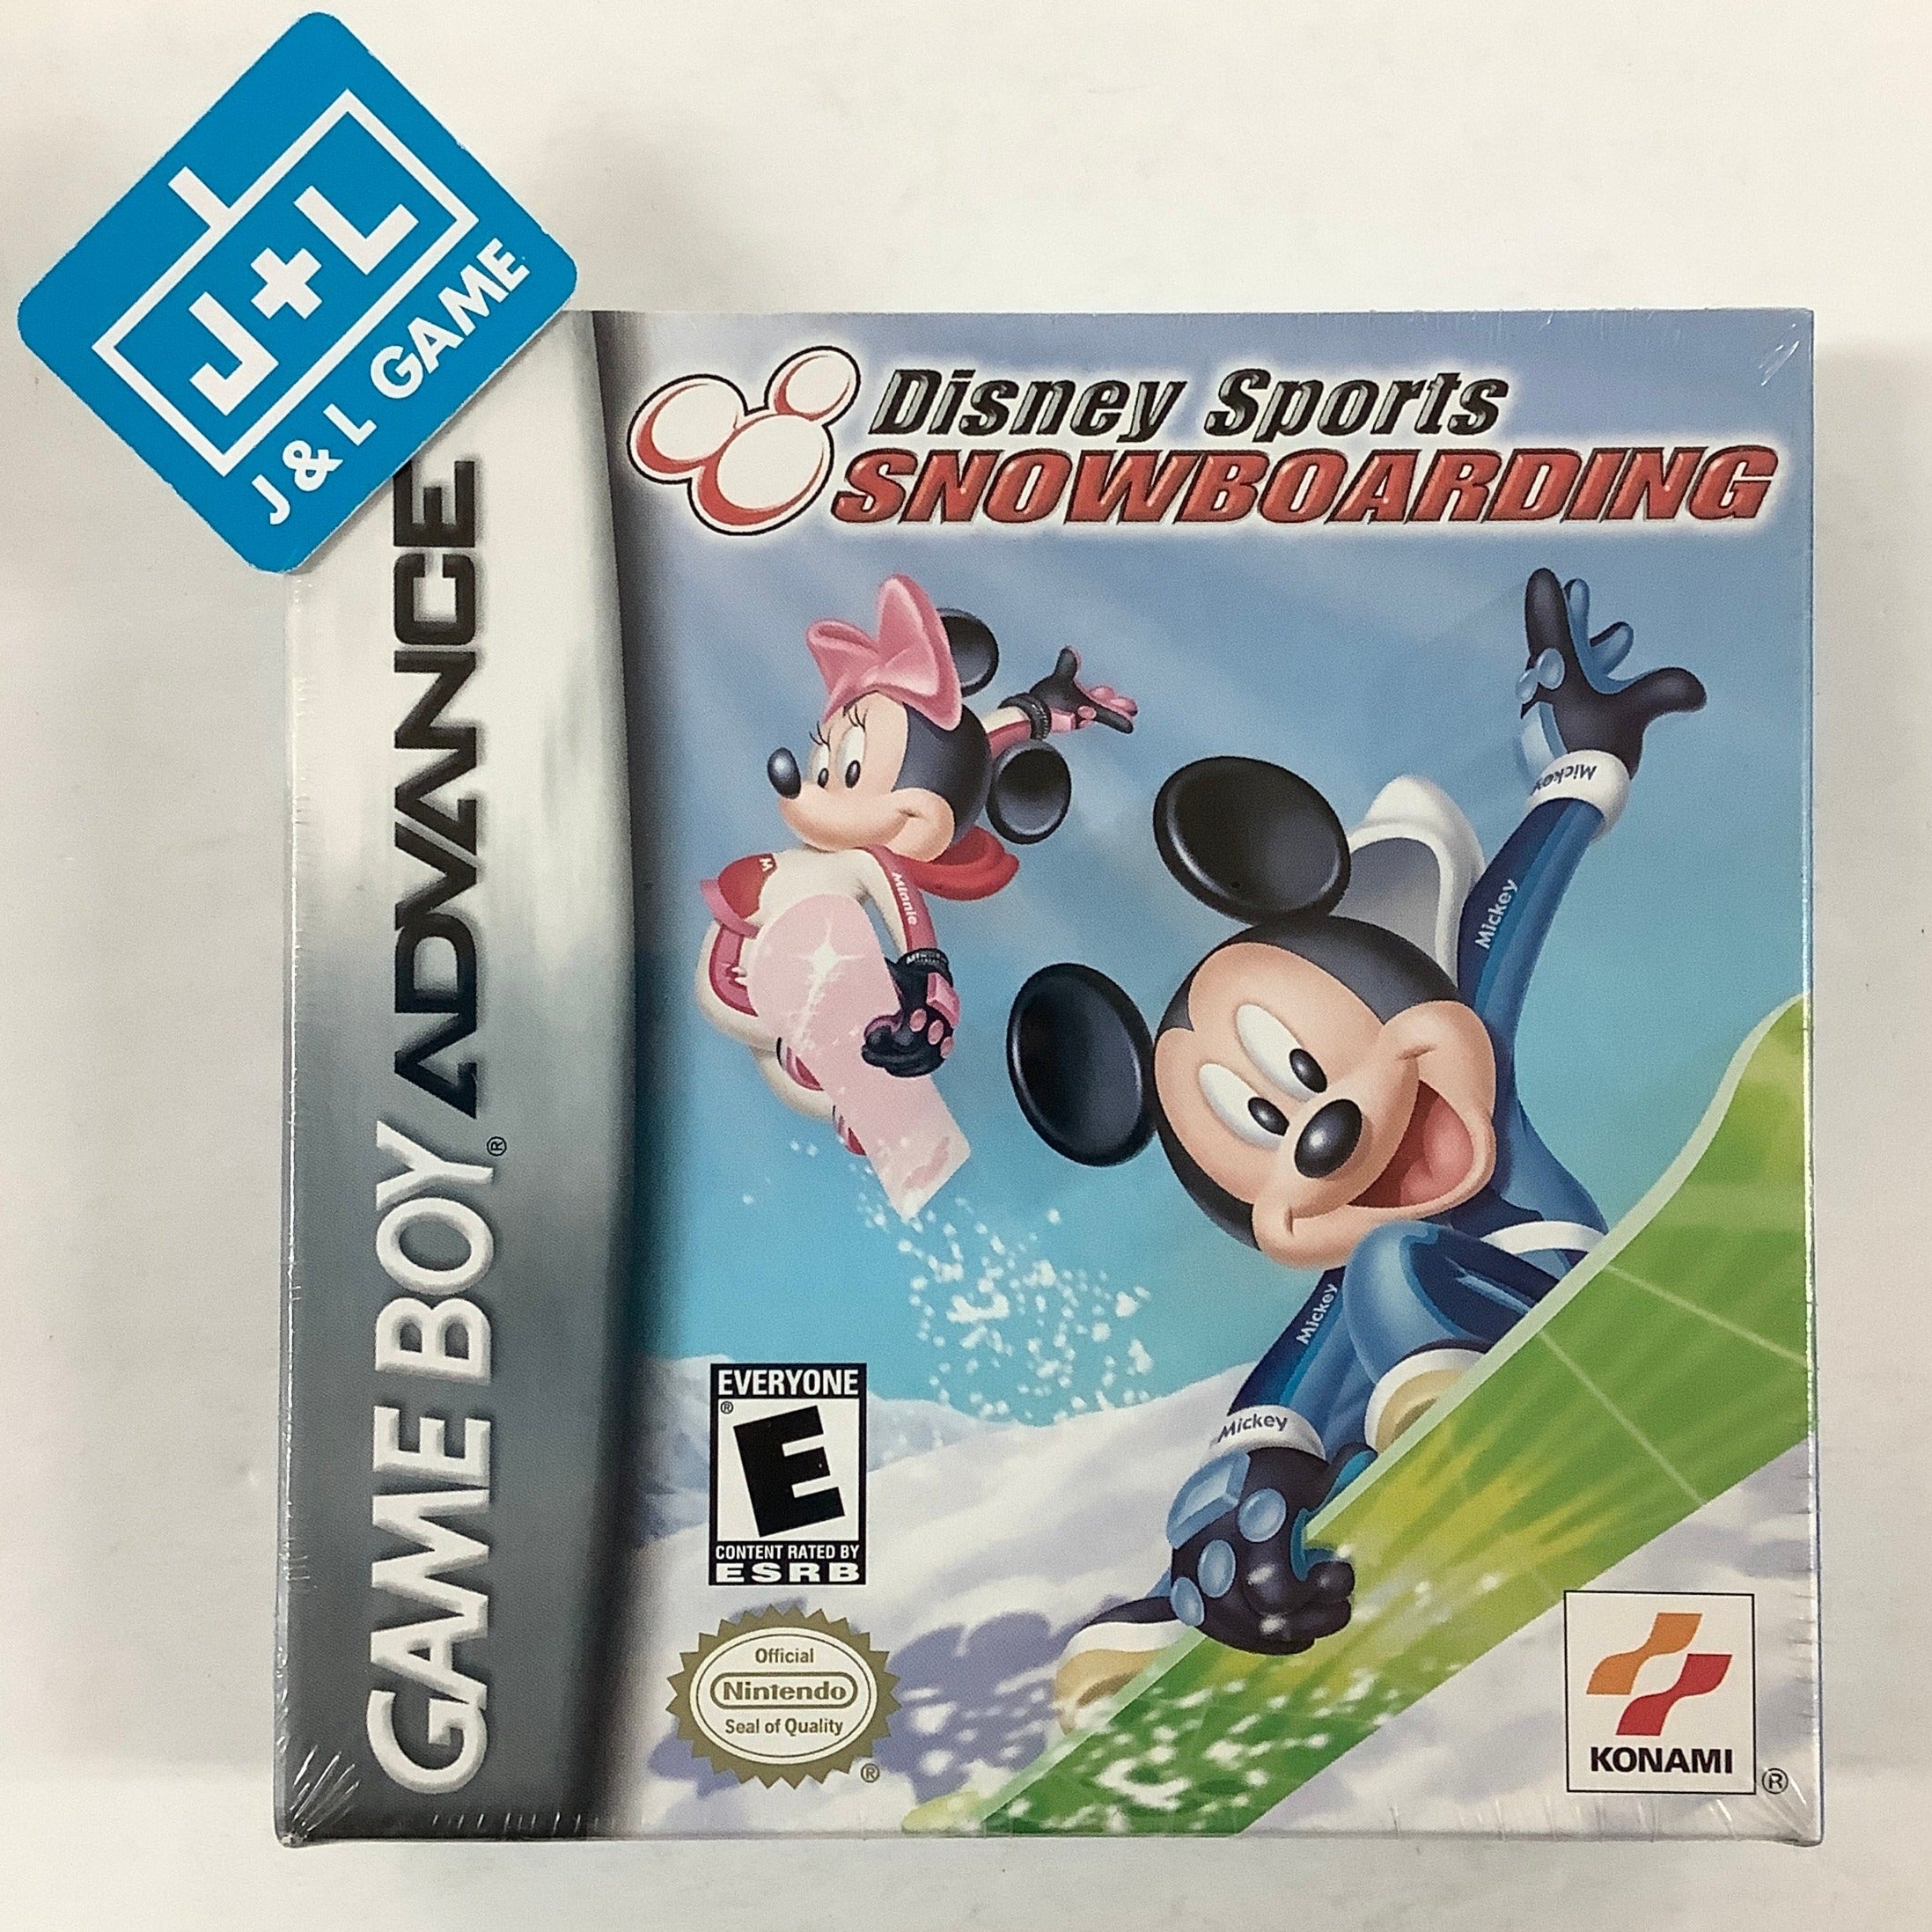 Disney Sports: Snowboarding - (GBA) Game Boy Advance Video Games Konami   